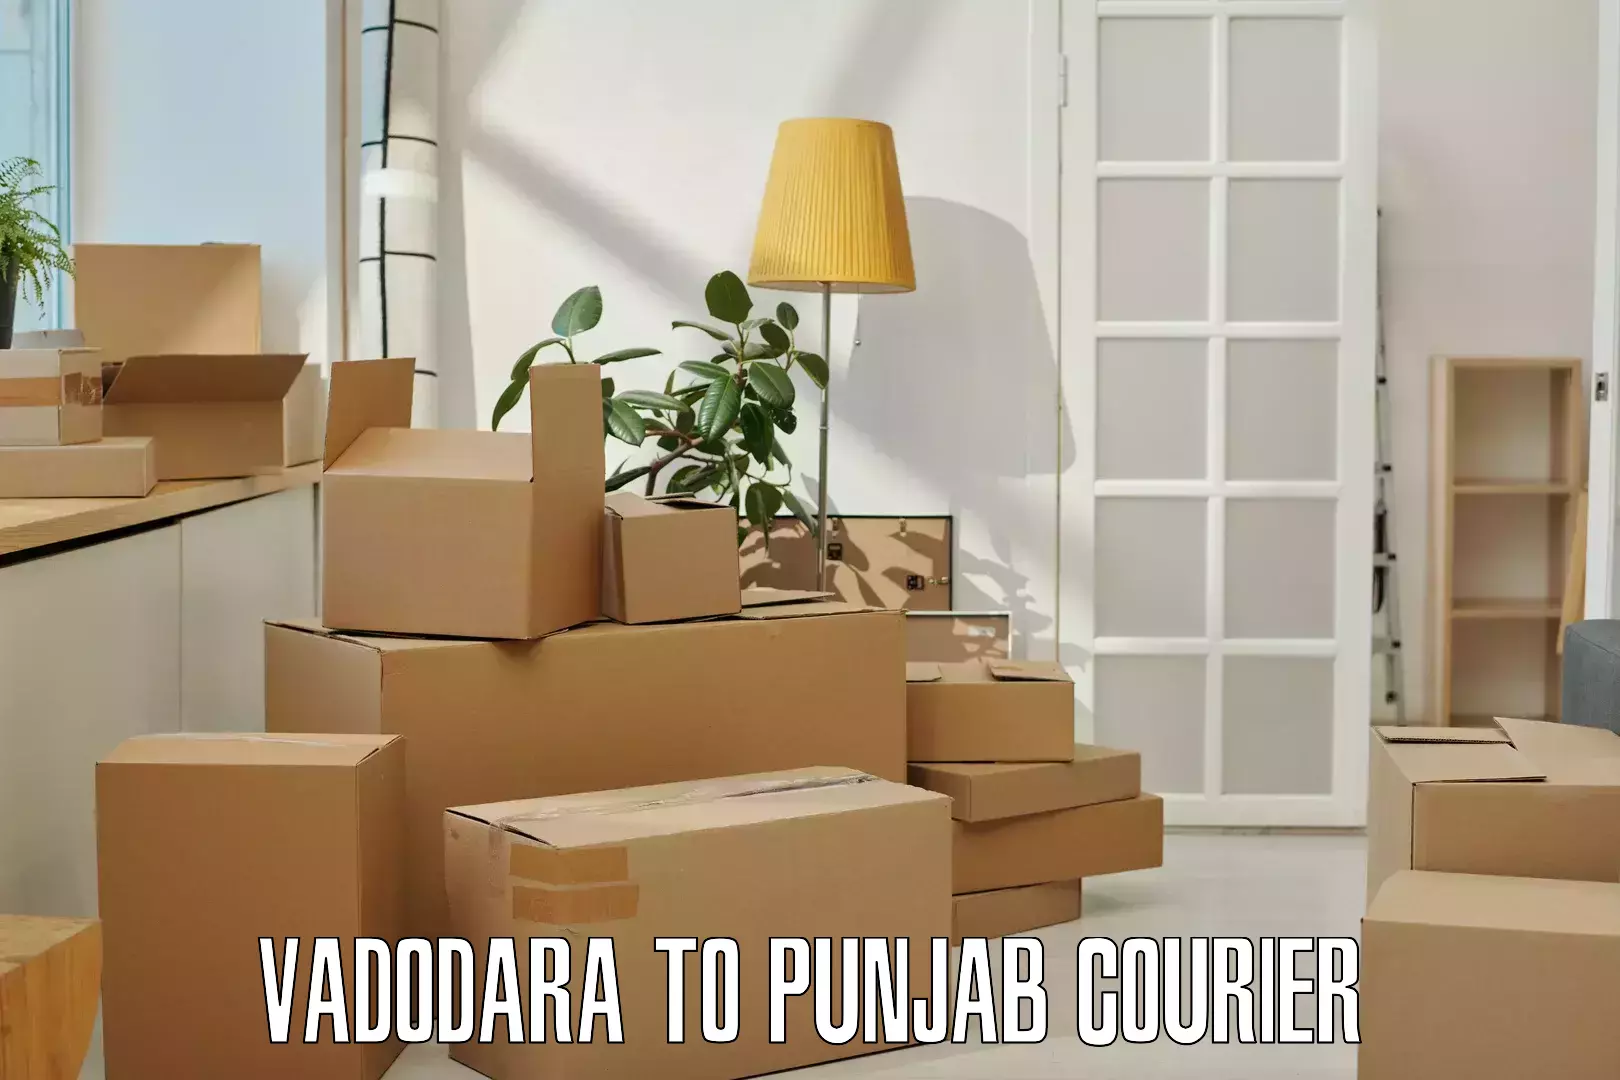 Professional parcel services Vadodara to Faridkot